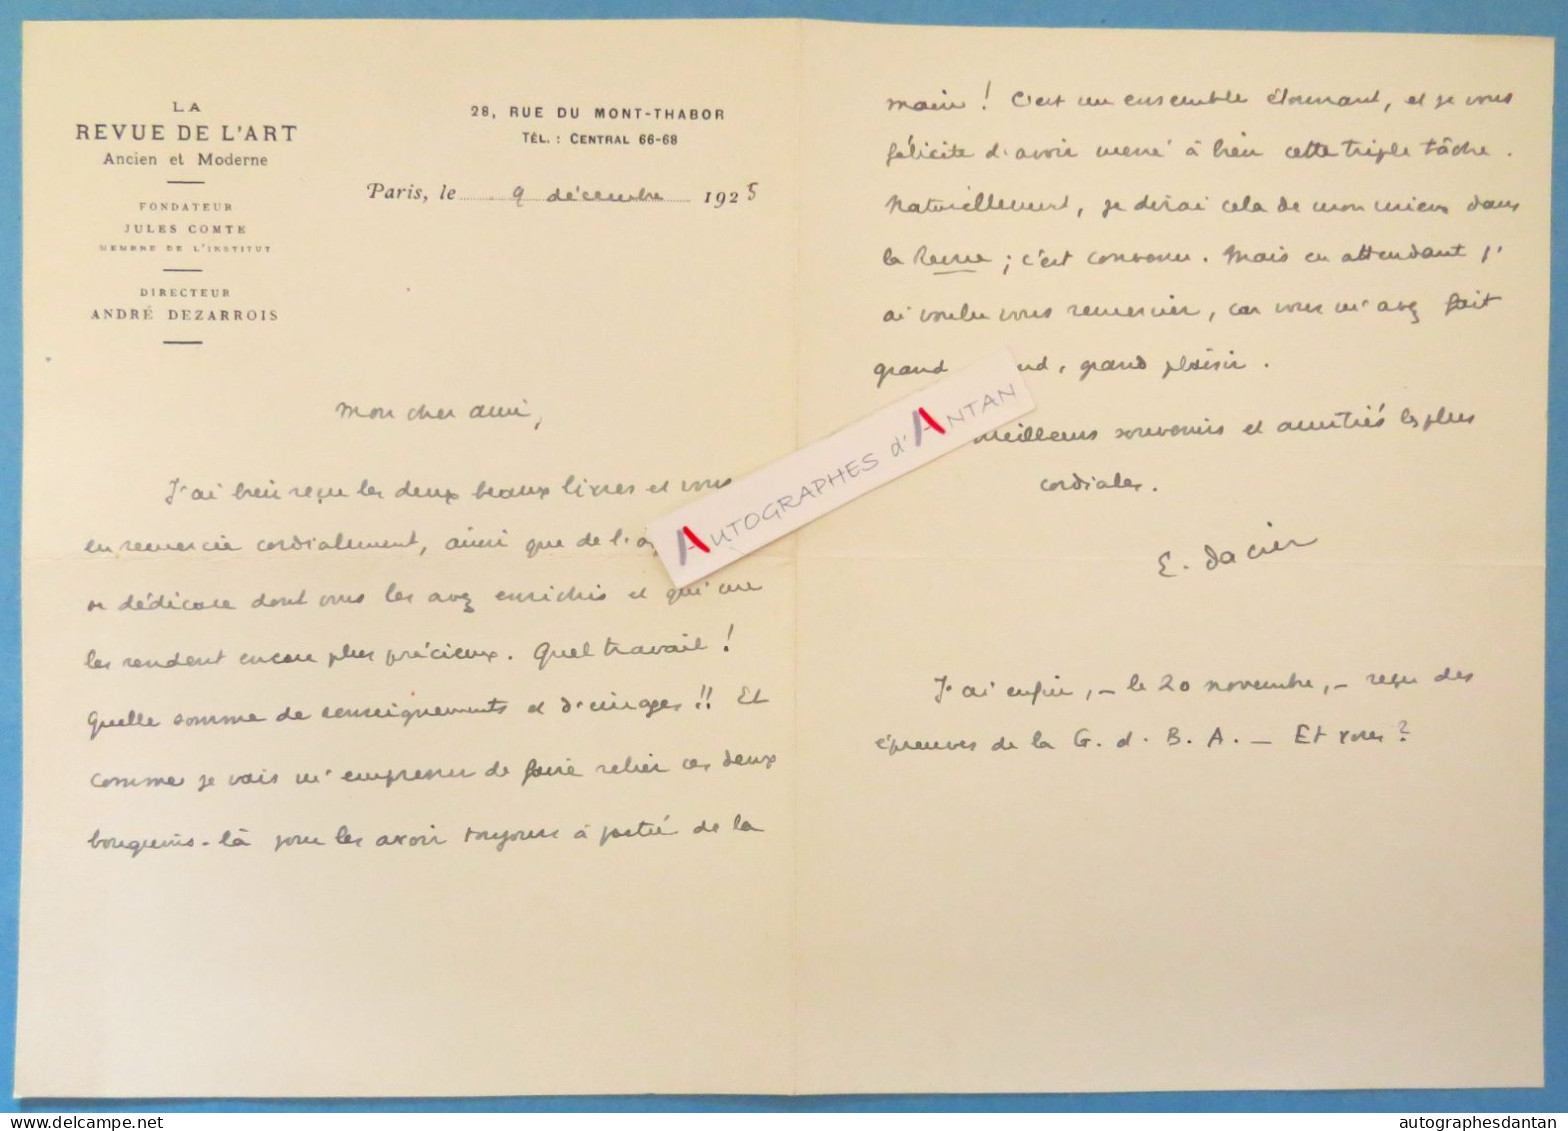 ● L.A.S 1925 Emile DACIER La Revue De L'art - Bibliothécaire Et Historien De L'art Né à Orléans - Lettre Autographe - Ecrivains